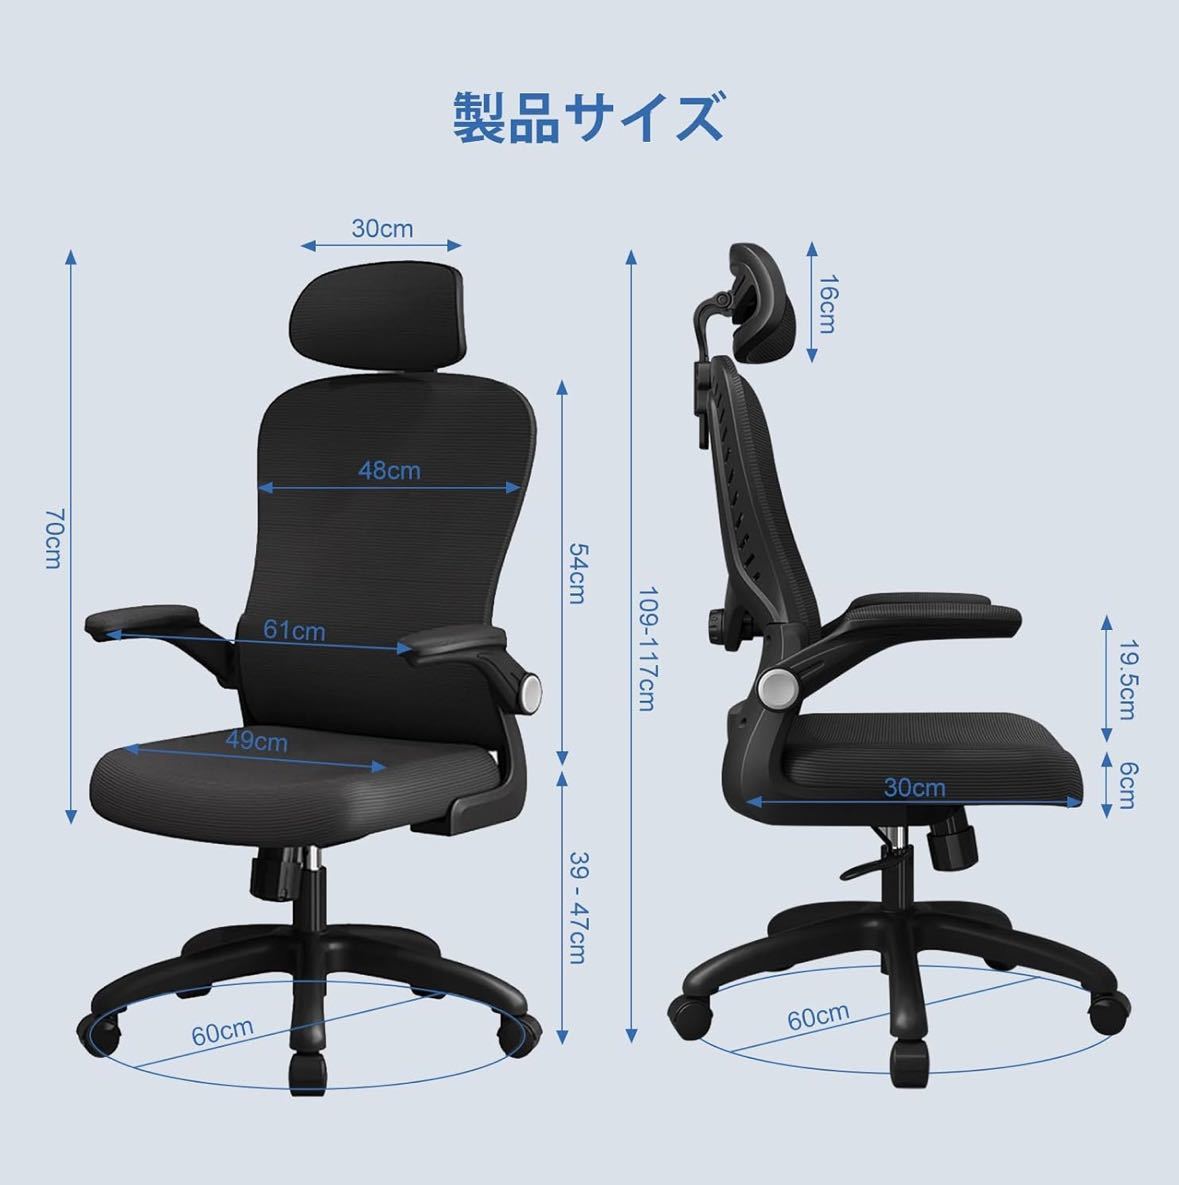 オフィスチェア 椅子 パソコンチェア 人間工学デスクチェア S字構造 揺れ式ロッキング機能 跳ね上げ式アームレスト ファッション 疲れない_画像2